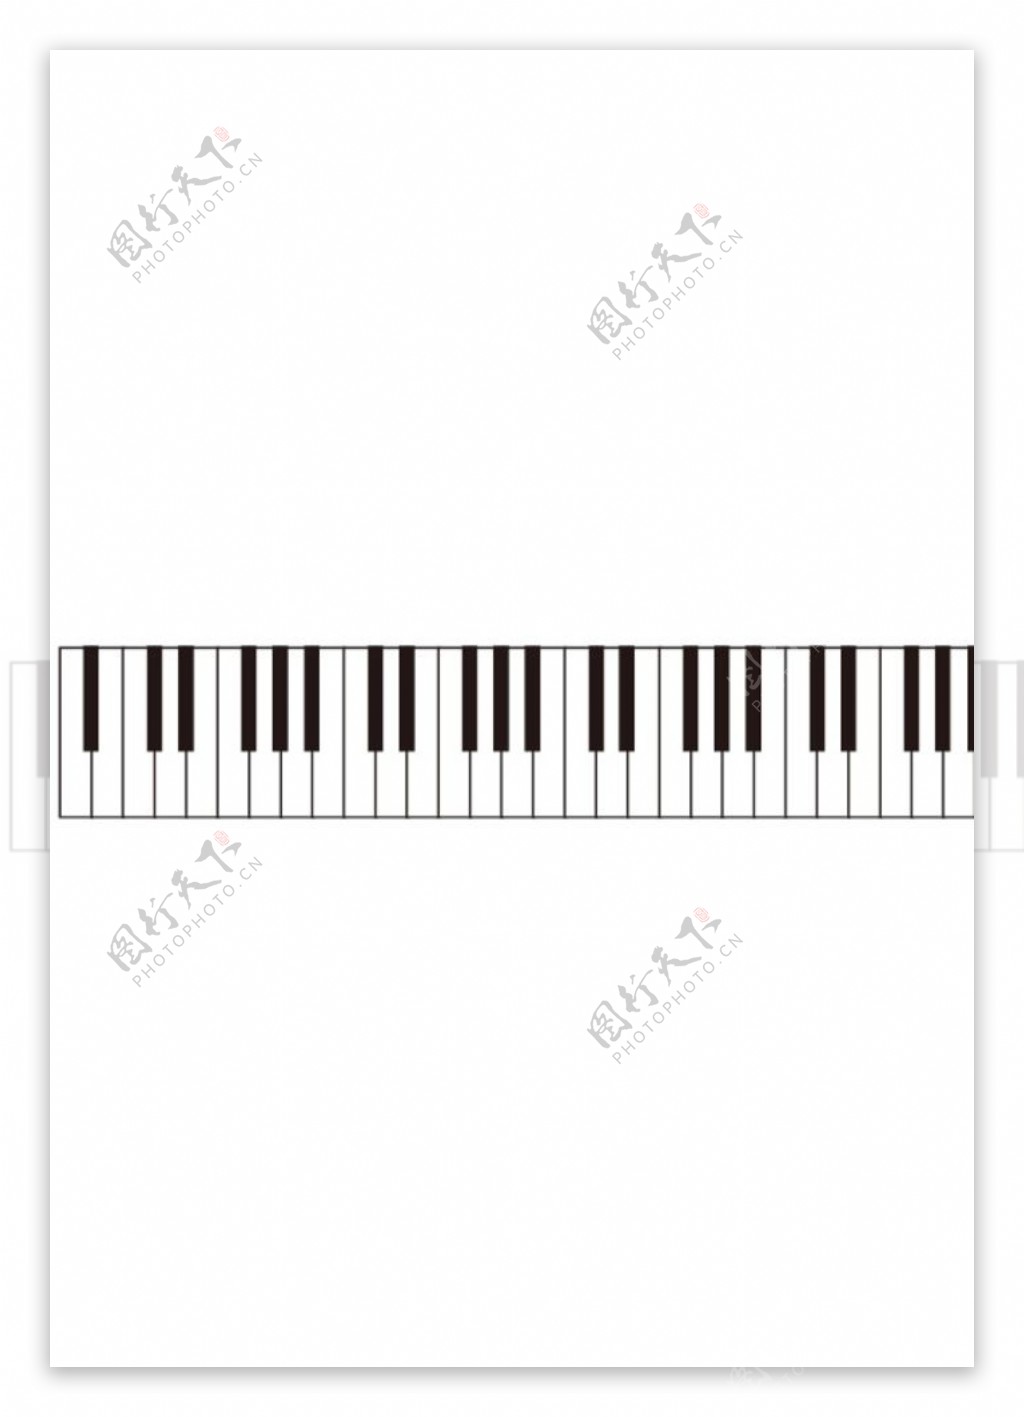 钢琴键图片